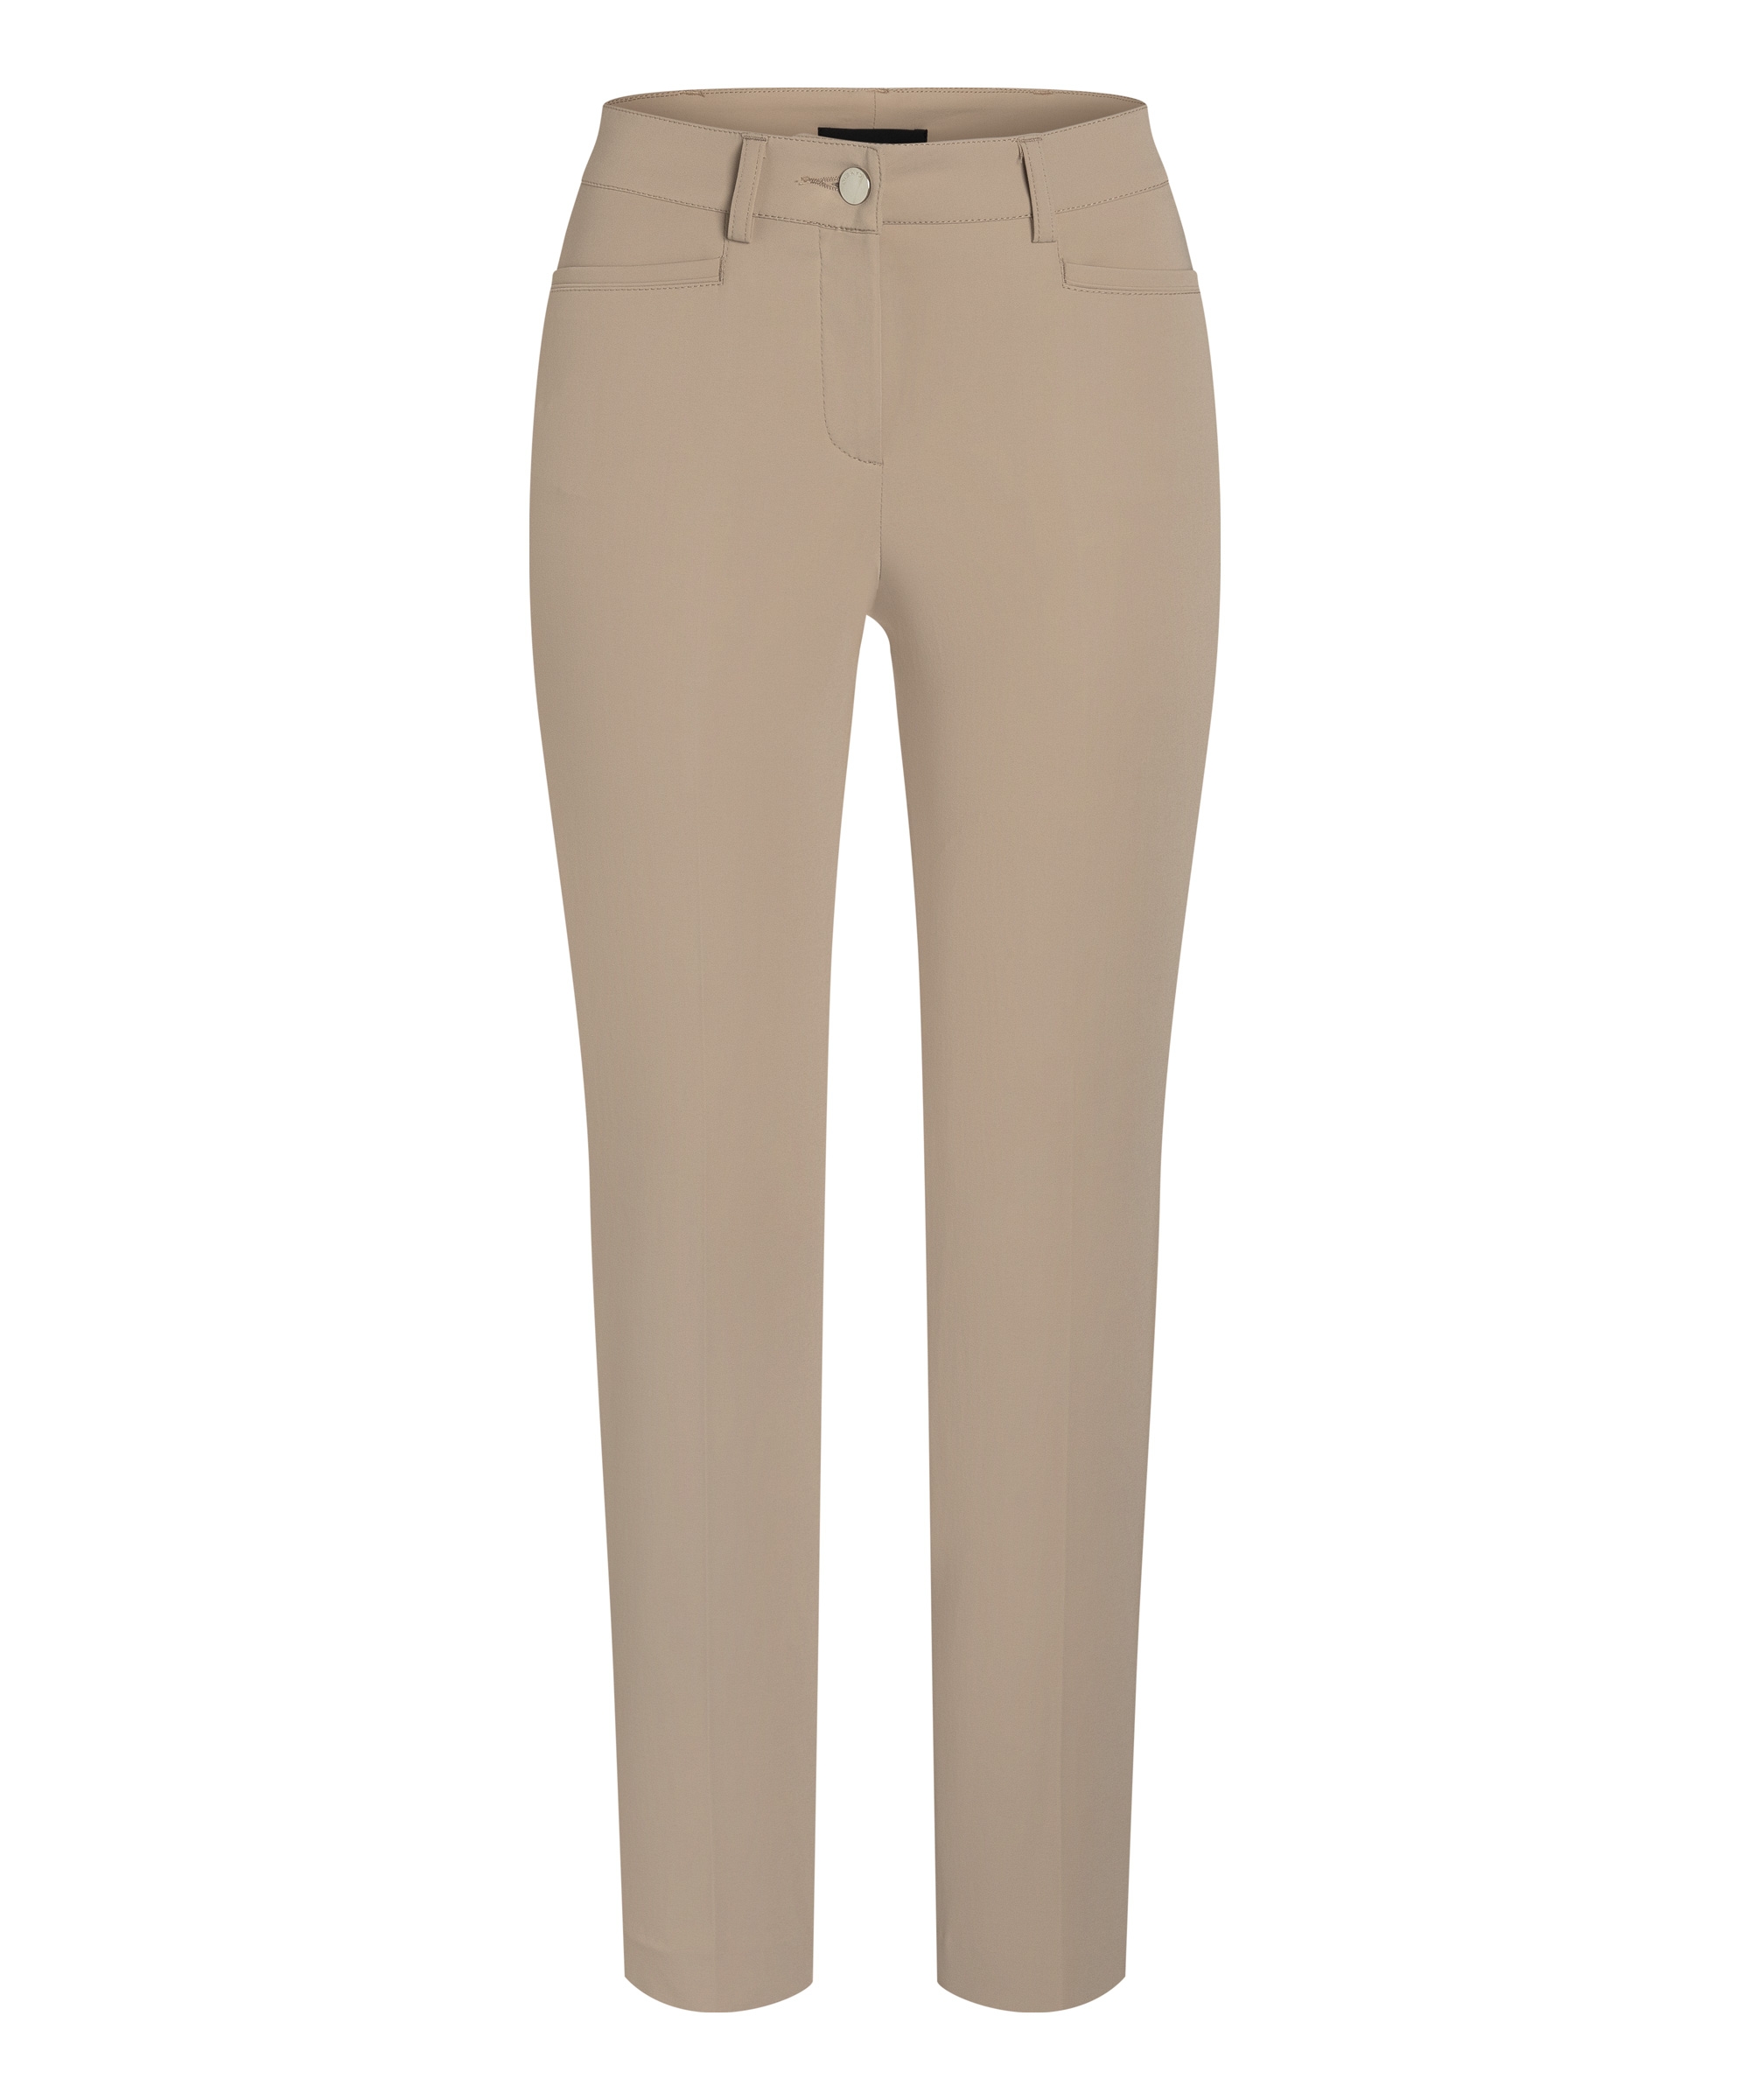 Spodnie w kant , nogawki klasyczne, kolor jasny beż  Cambio Renira 0285-15-8299-774